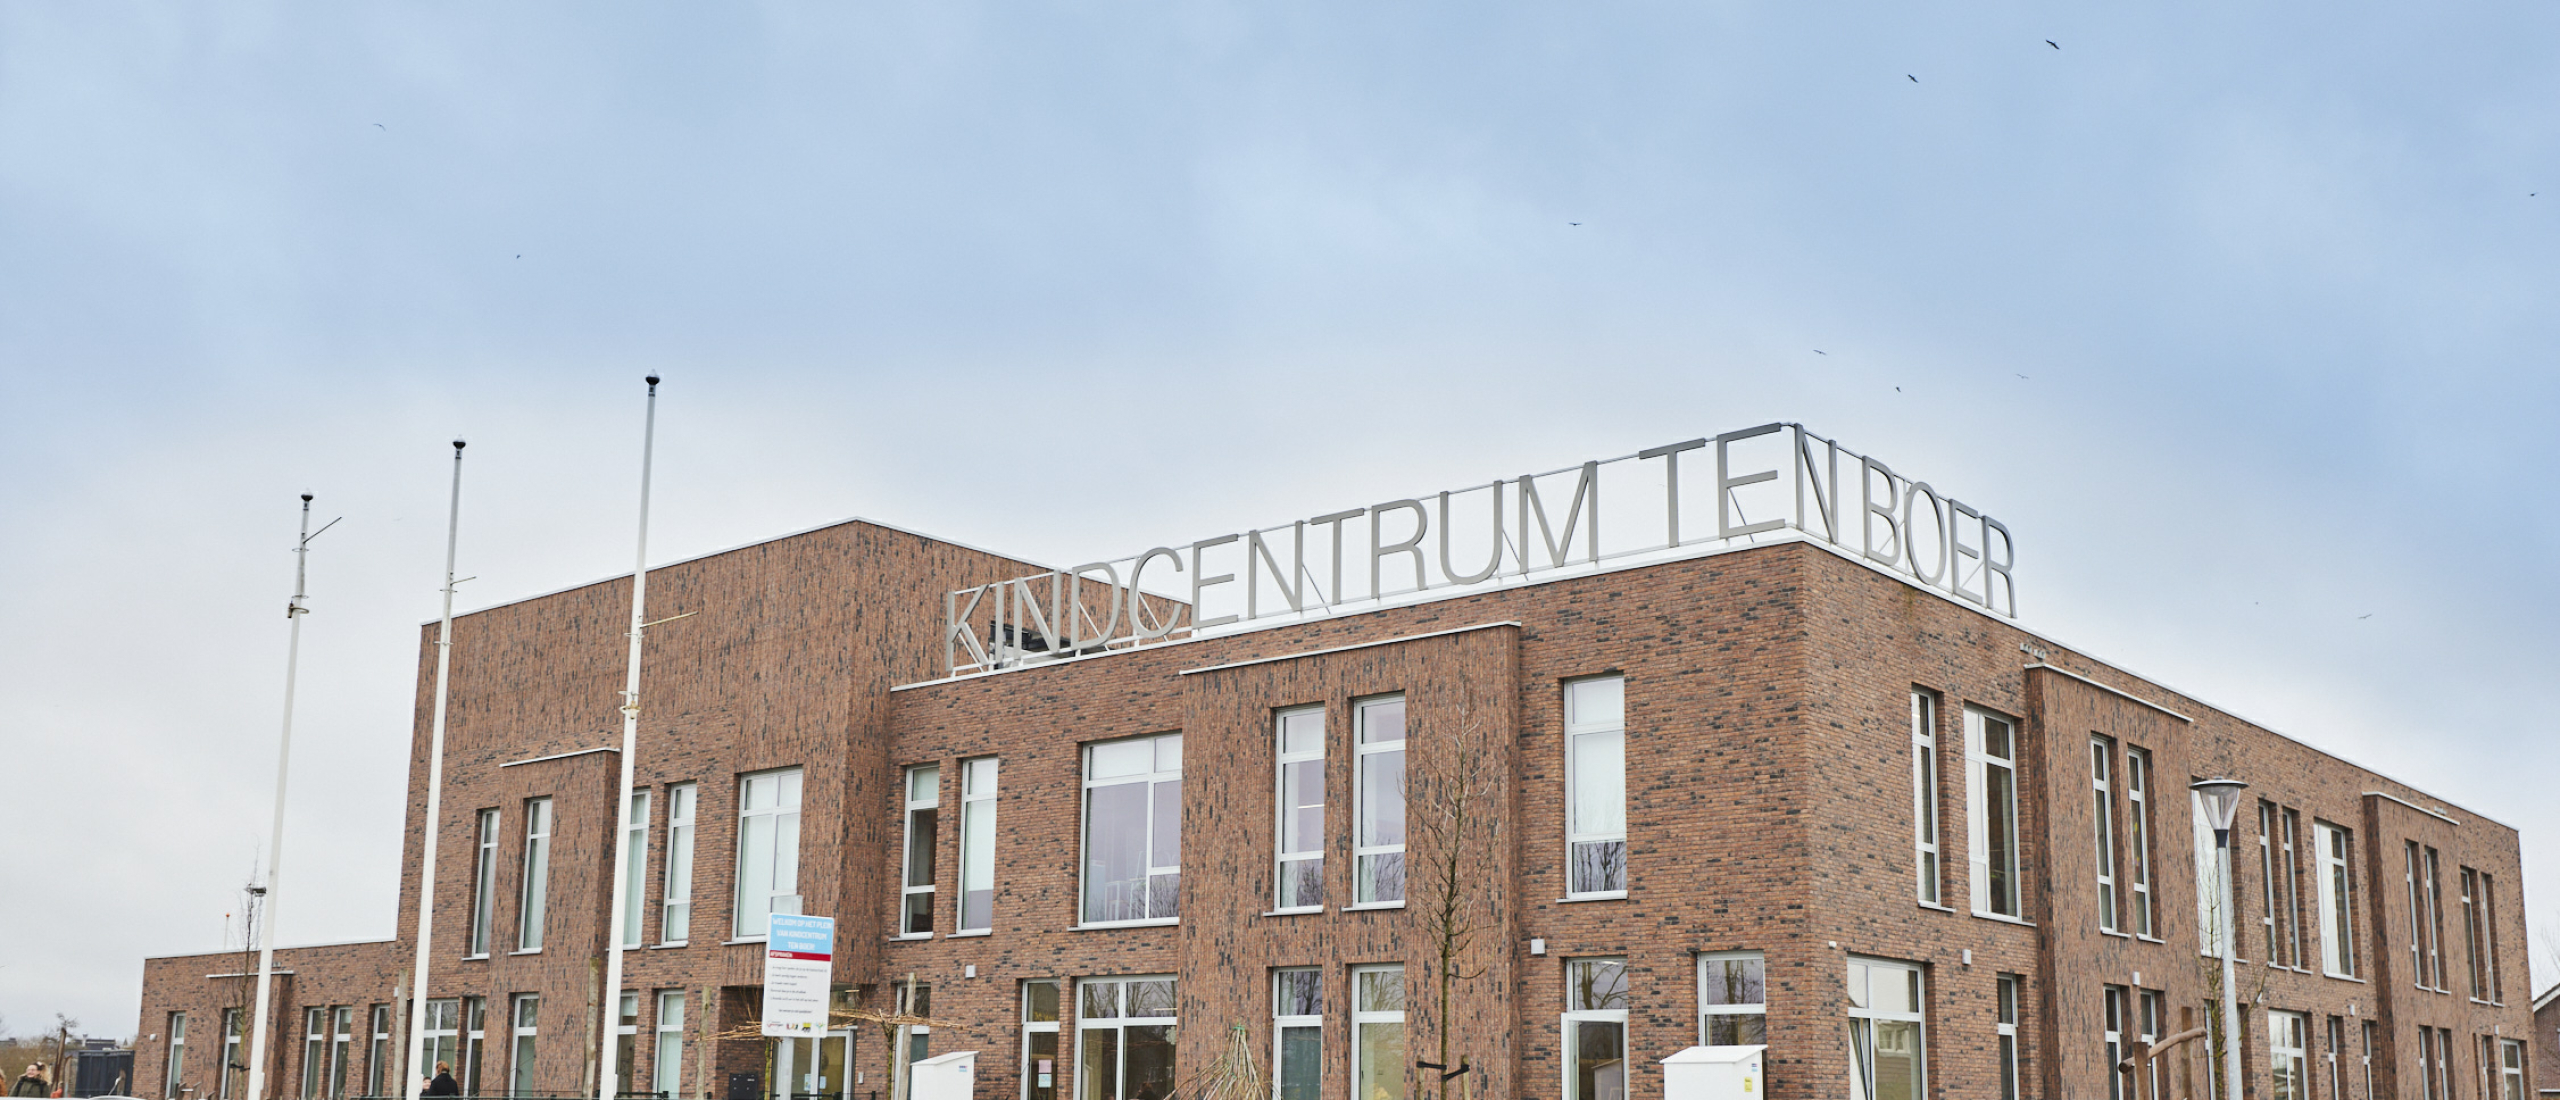 Theater faciliteiten van hoog niveau voor Kindcentrum Ten Boer, provincie Groningen